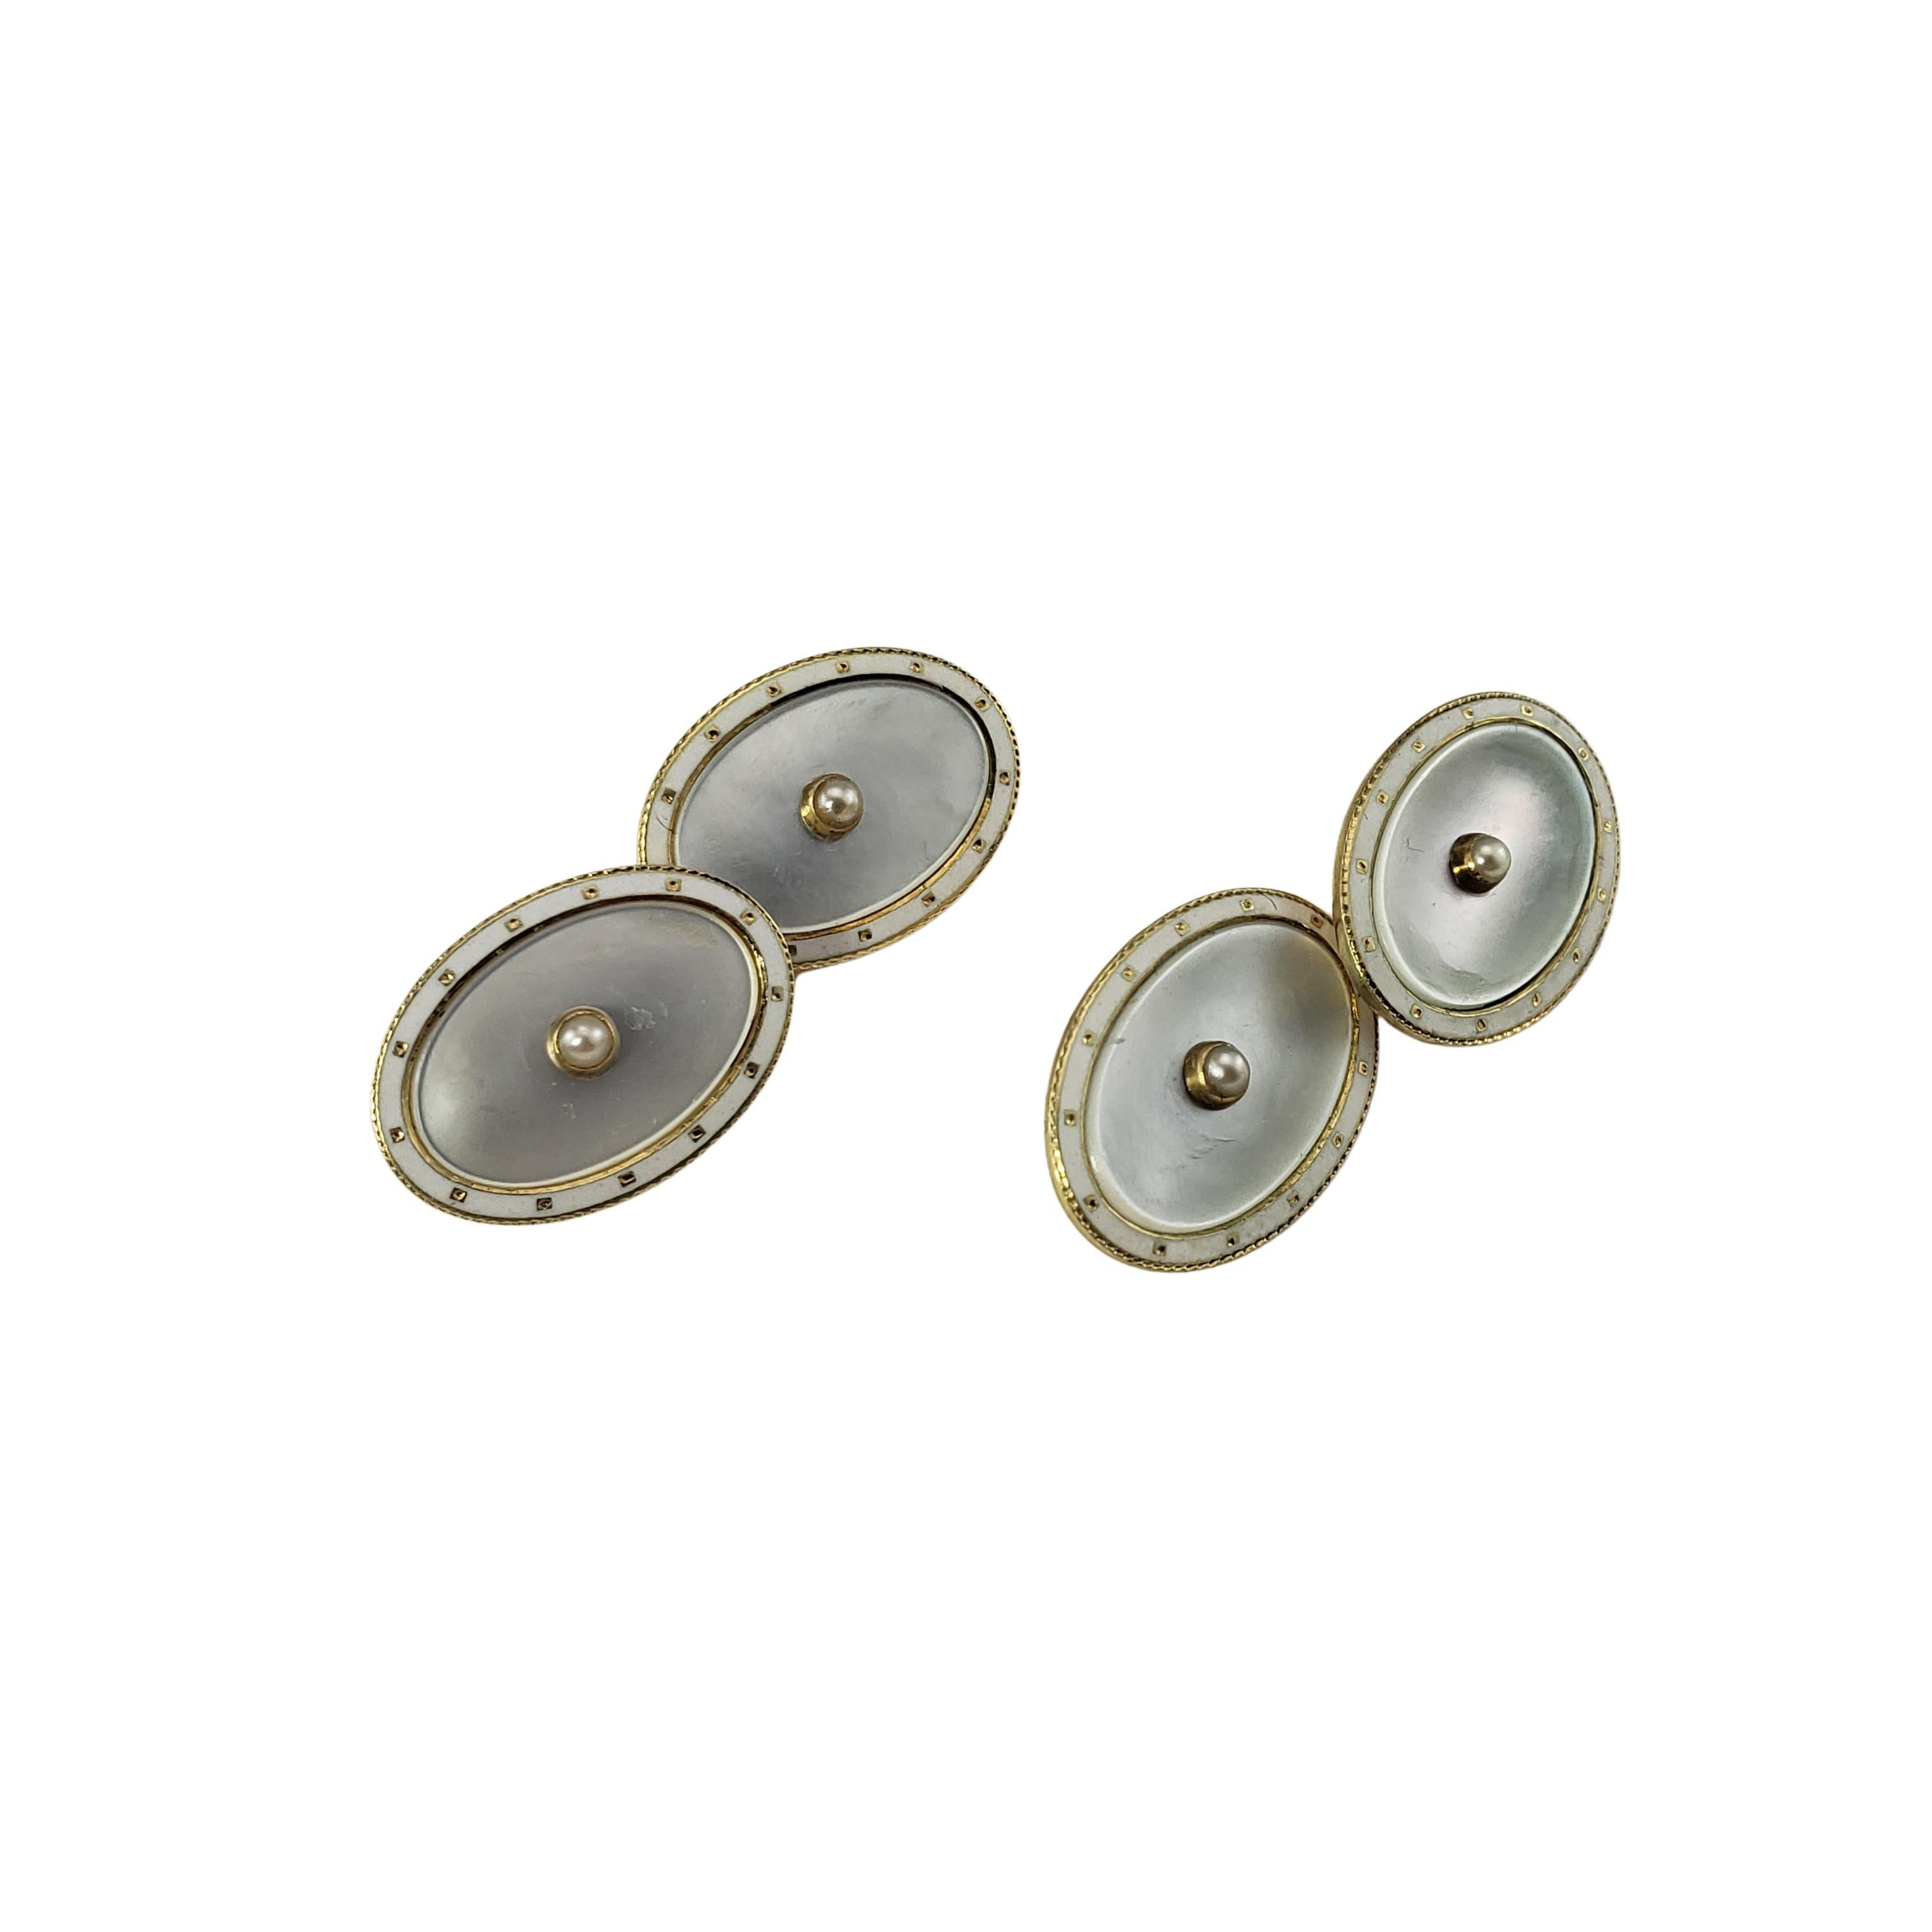 14 Karat Gelbgold Perlmutt und Perlen Manschettenknöpfe-

Diese eleganten Manschettenknöpfe haben jeweils eine runde Perle und eine wunderschön detaillierte Einlage aus Perlmutt.

Größe:  18 mm x 13 mm

Gewicht:  6,1 dwt. /  9,6 gr.

Gestempelt: 